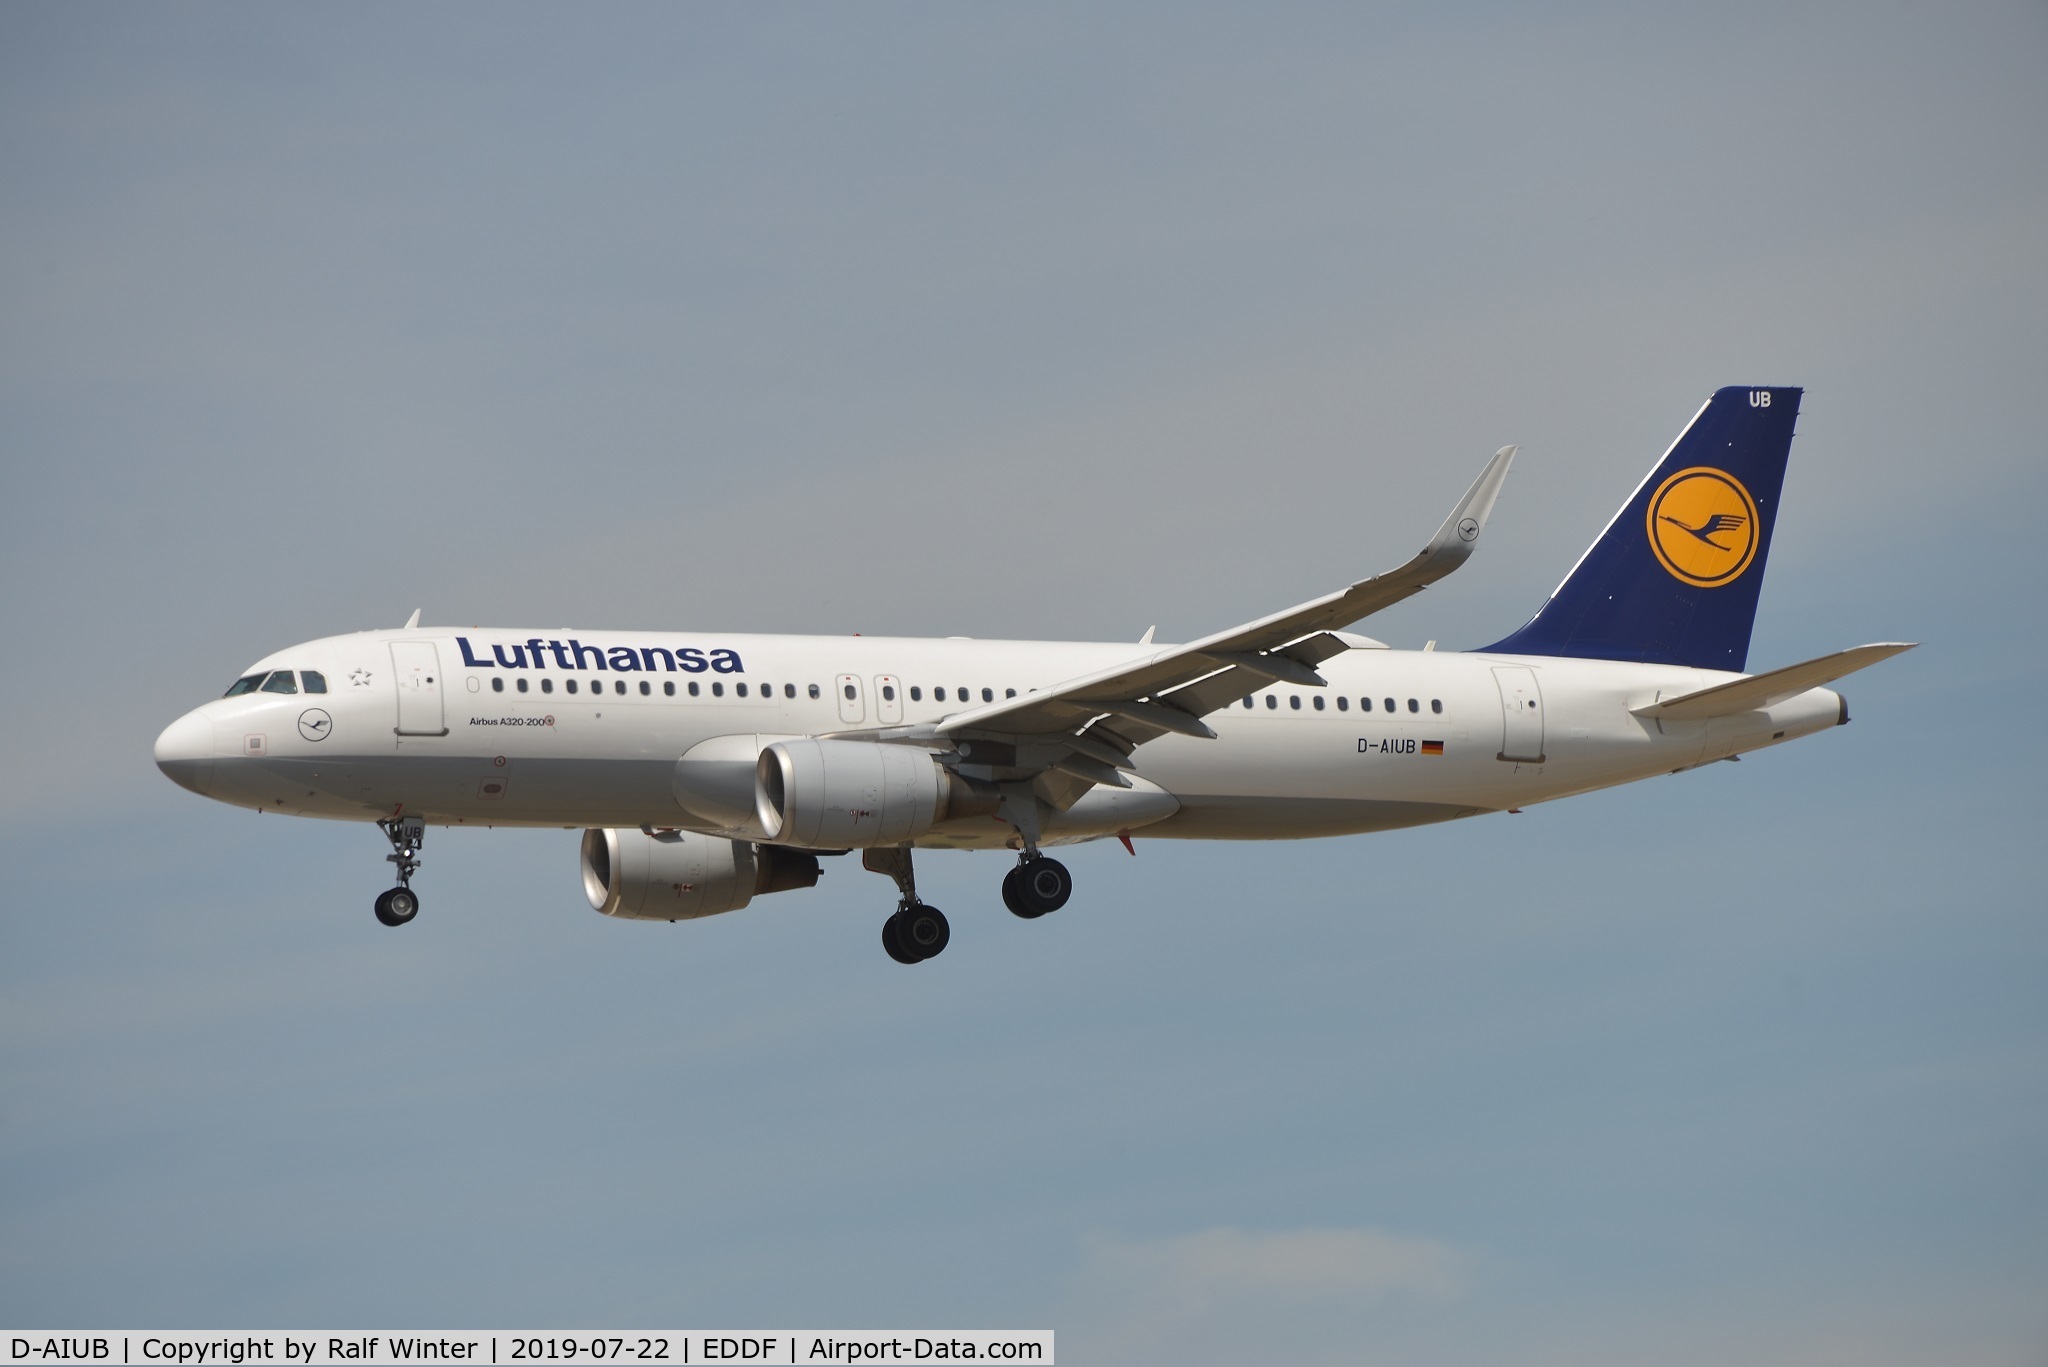 D-AIUB, 2014 Airbus A320-214 C/N 5972, Airbus A320-214(W) - LH DLH Lufthansa - 5972 - D-AIUB - 22.07.2019 - FRA